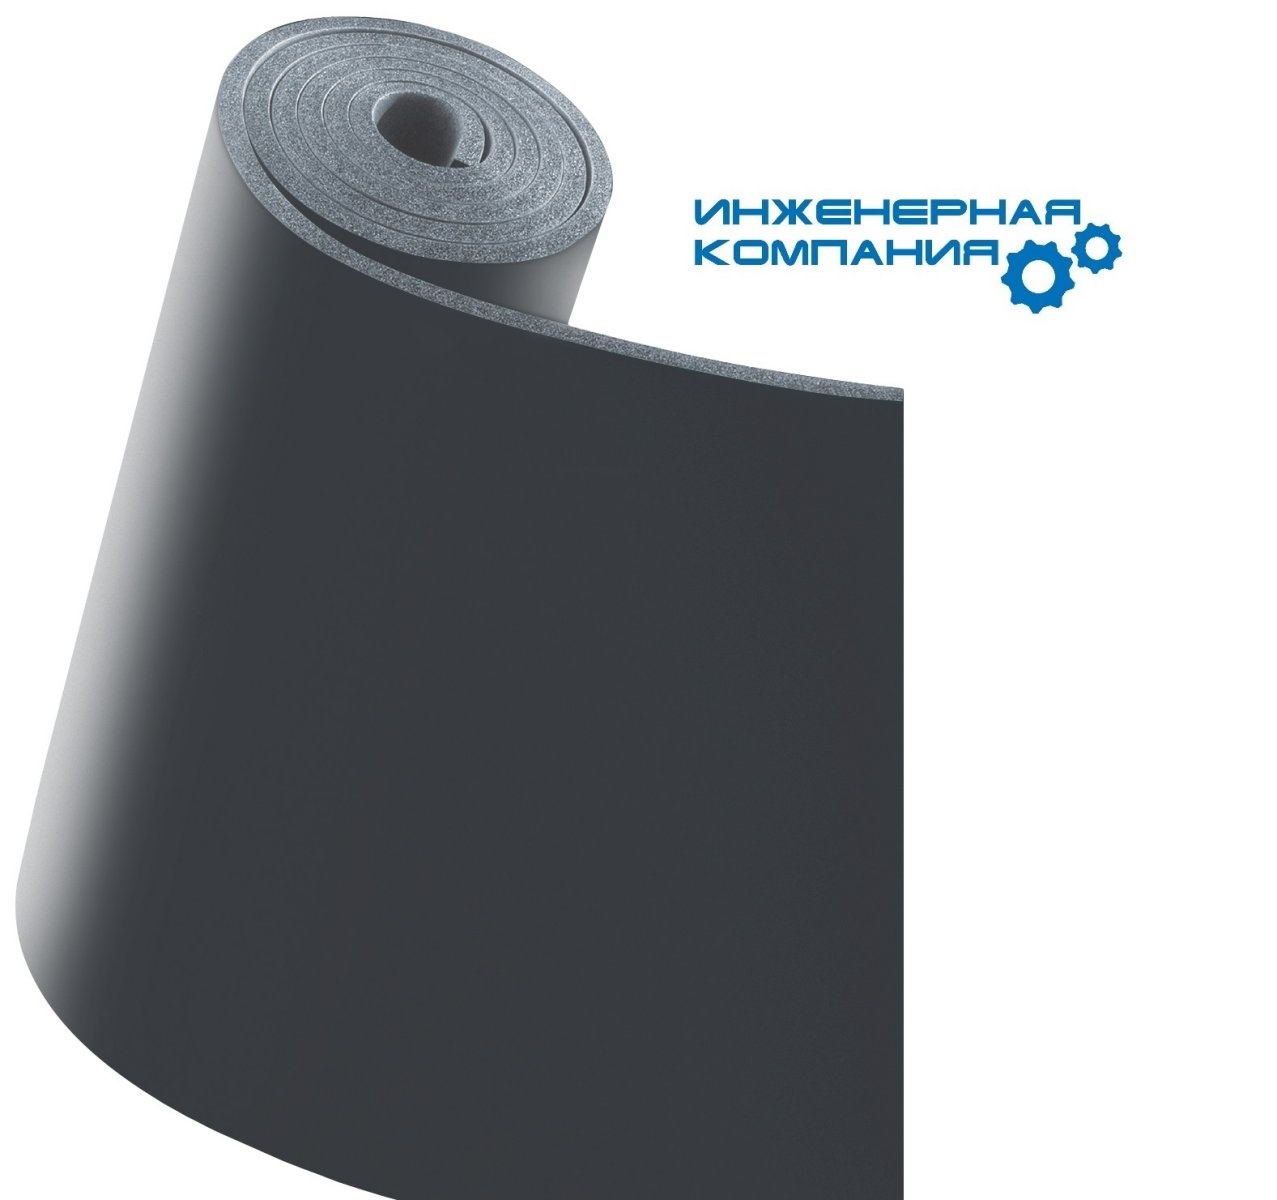 Рулон k-Flex склад. Изоляция каучуковая цилиндр. Материал рулонный каучуковый, основа стеклоткань. Теплоизоляция k-Shield.